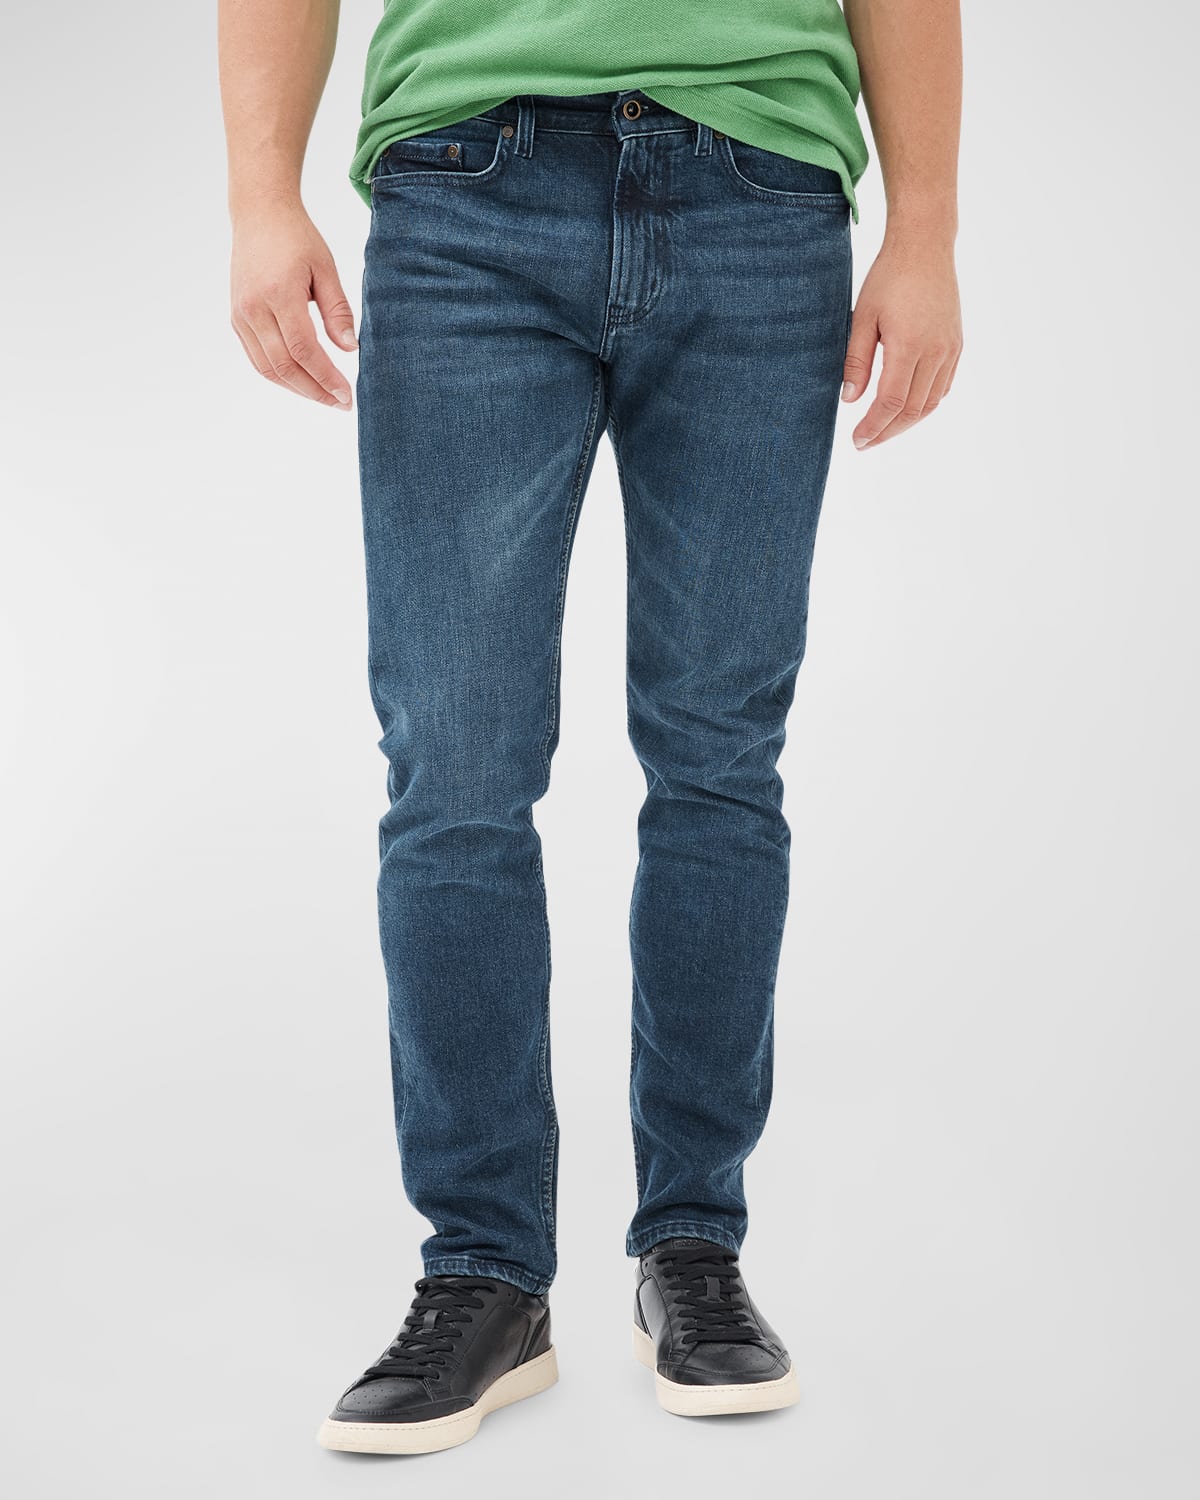 Men's Owaka Comfort Denim Jeans